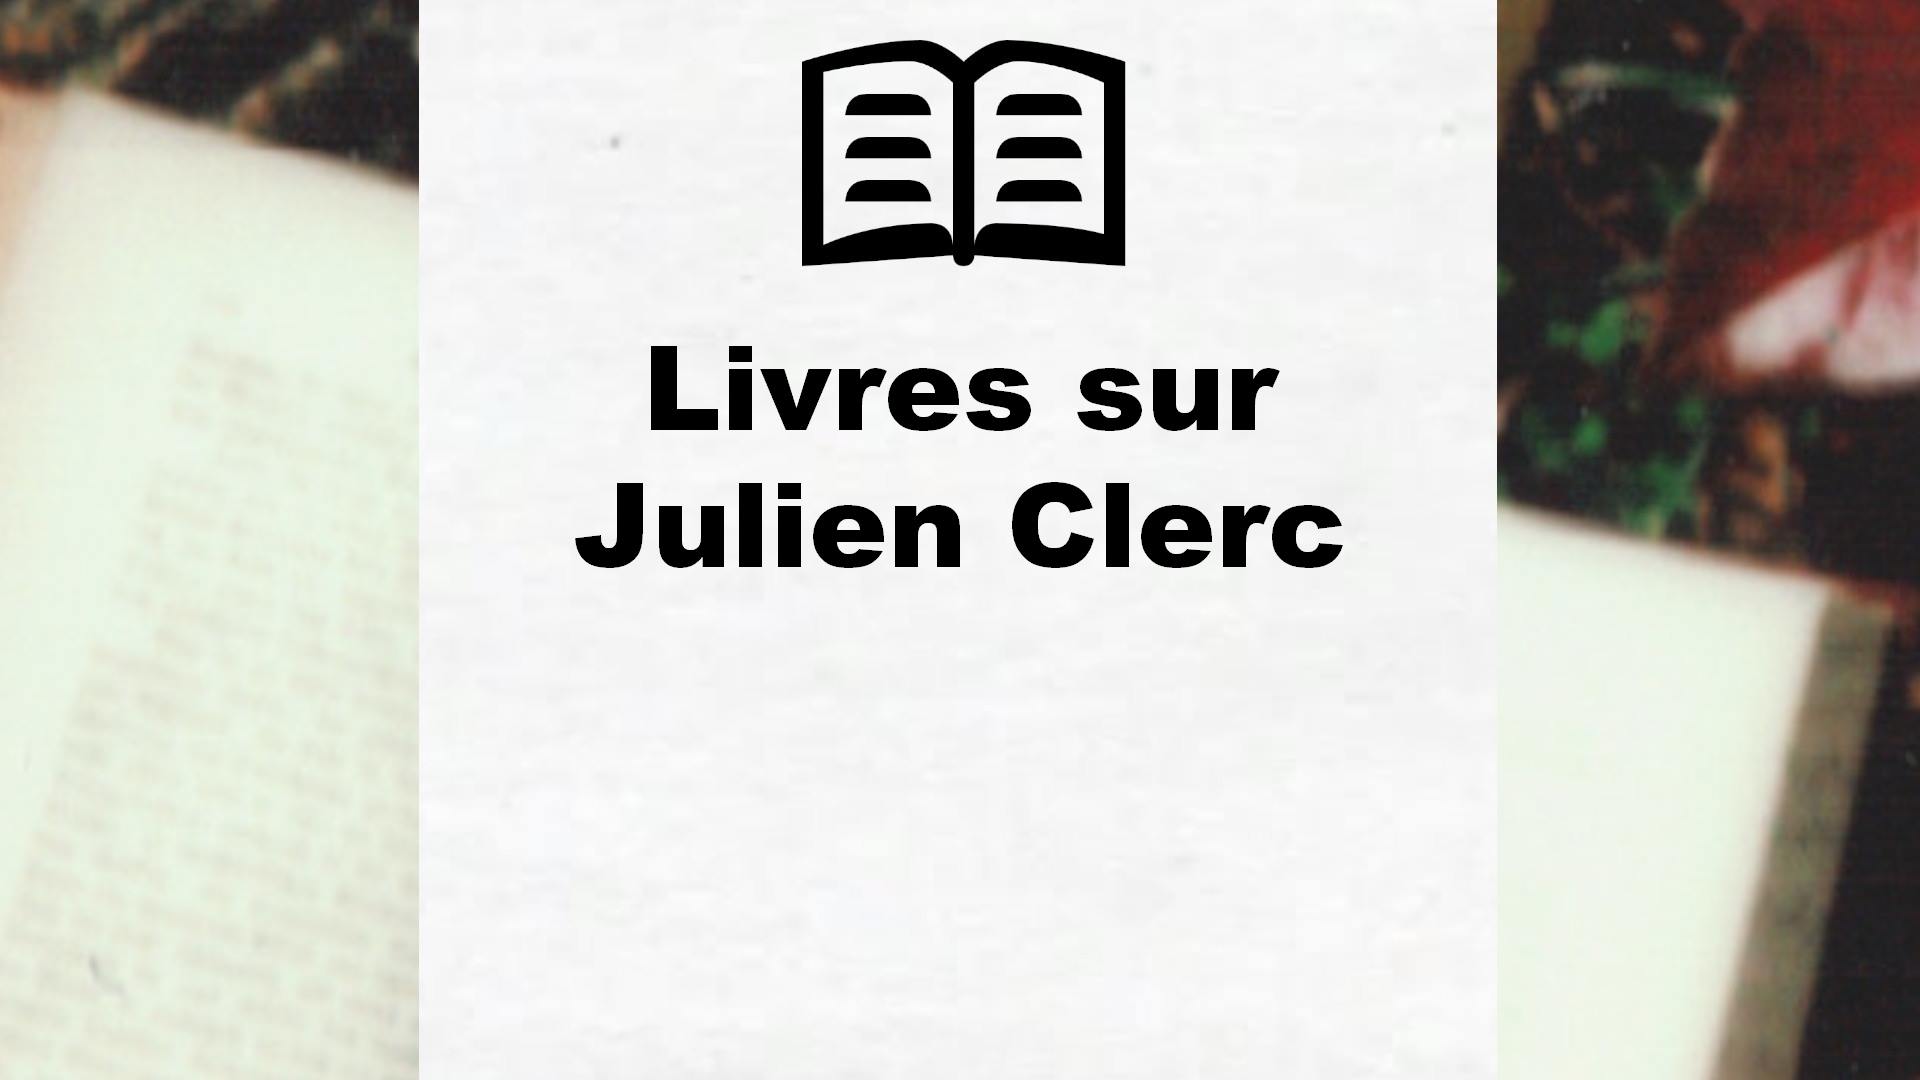 Livres sur Julien Clerc